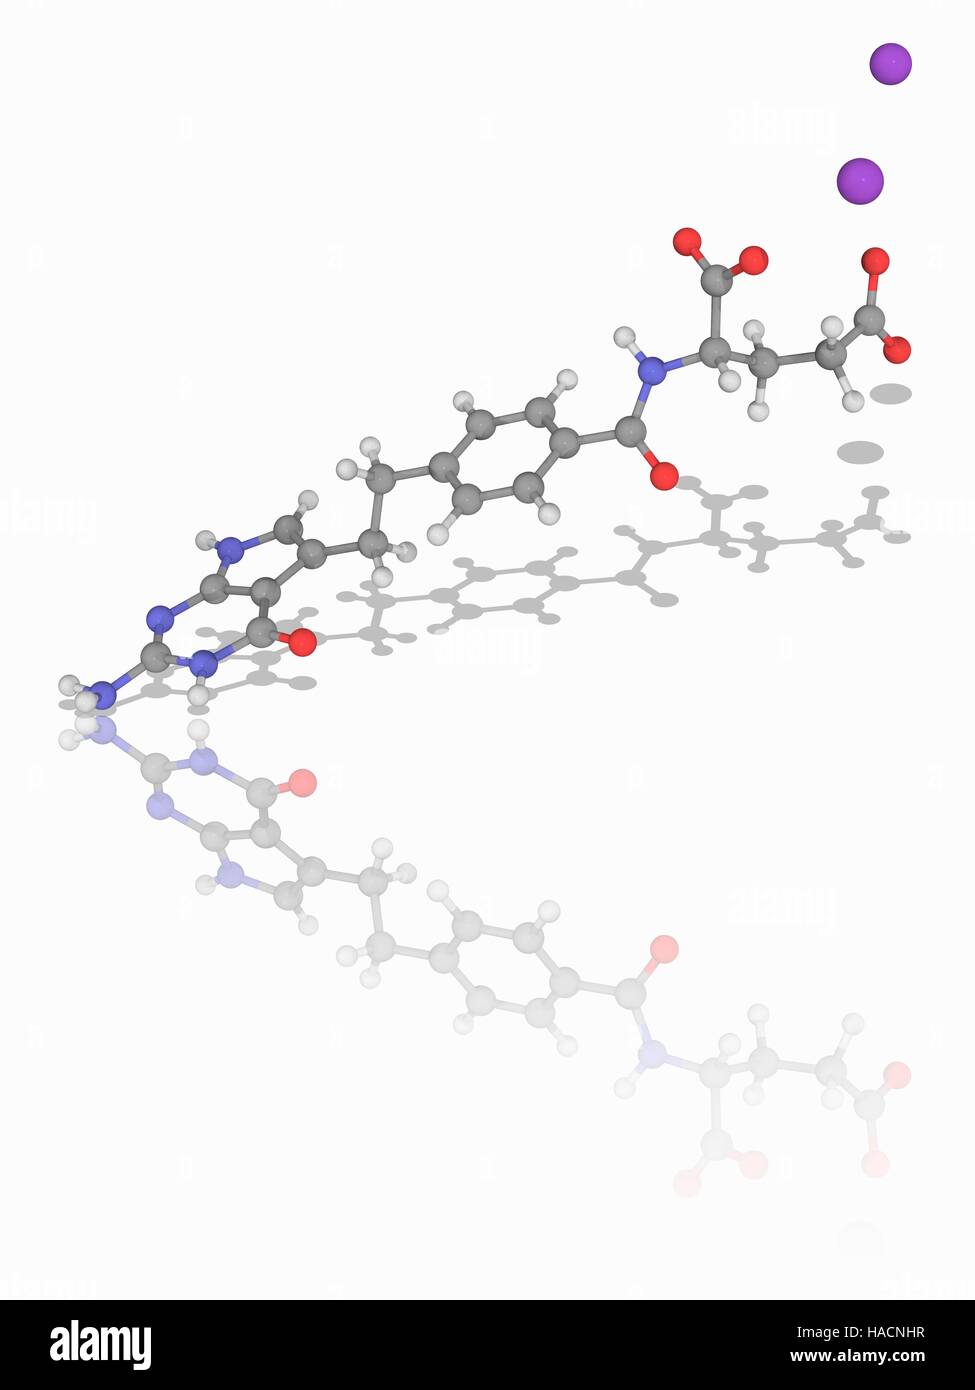 Pemetrexed Binatrium. Molekülmodell der Chemotherapie Medikament Pemetrexed Binatrium (C20. H21. N5. O6. Na2), verwendet, um Genuss Pleuramesotheliom sowie nicht-kleinzelligem Lungenkrebs. Atome als Kugeln dargestellt werden und sind farblich gekennzeichnet: Kohlenstoff (grau), Wasserstoff (weiß), Stickstoff (blau) und Natrium (violett). Abbildung. Stockfoto